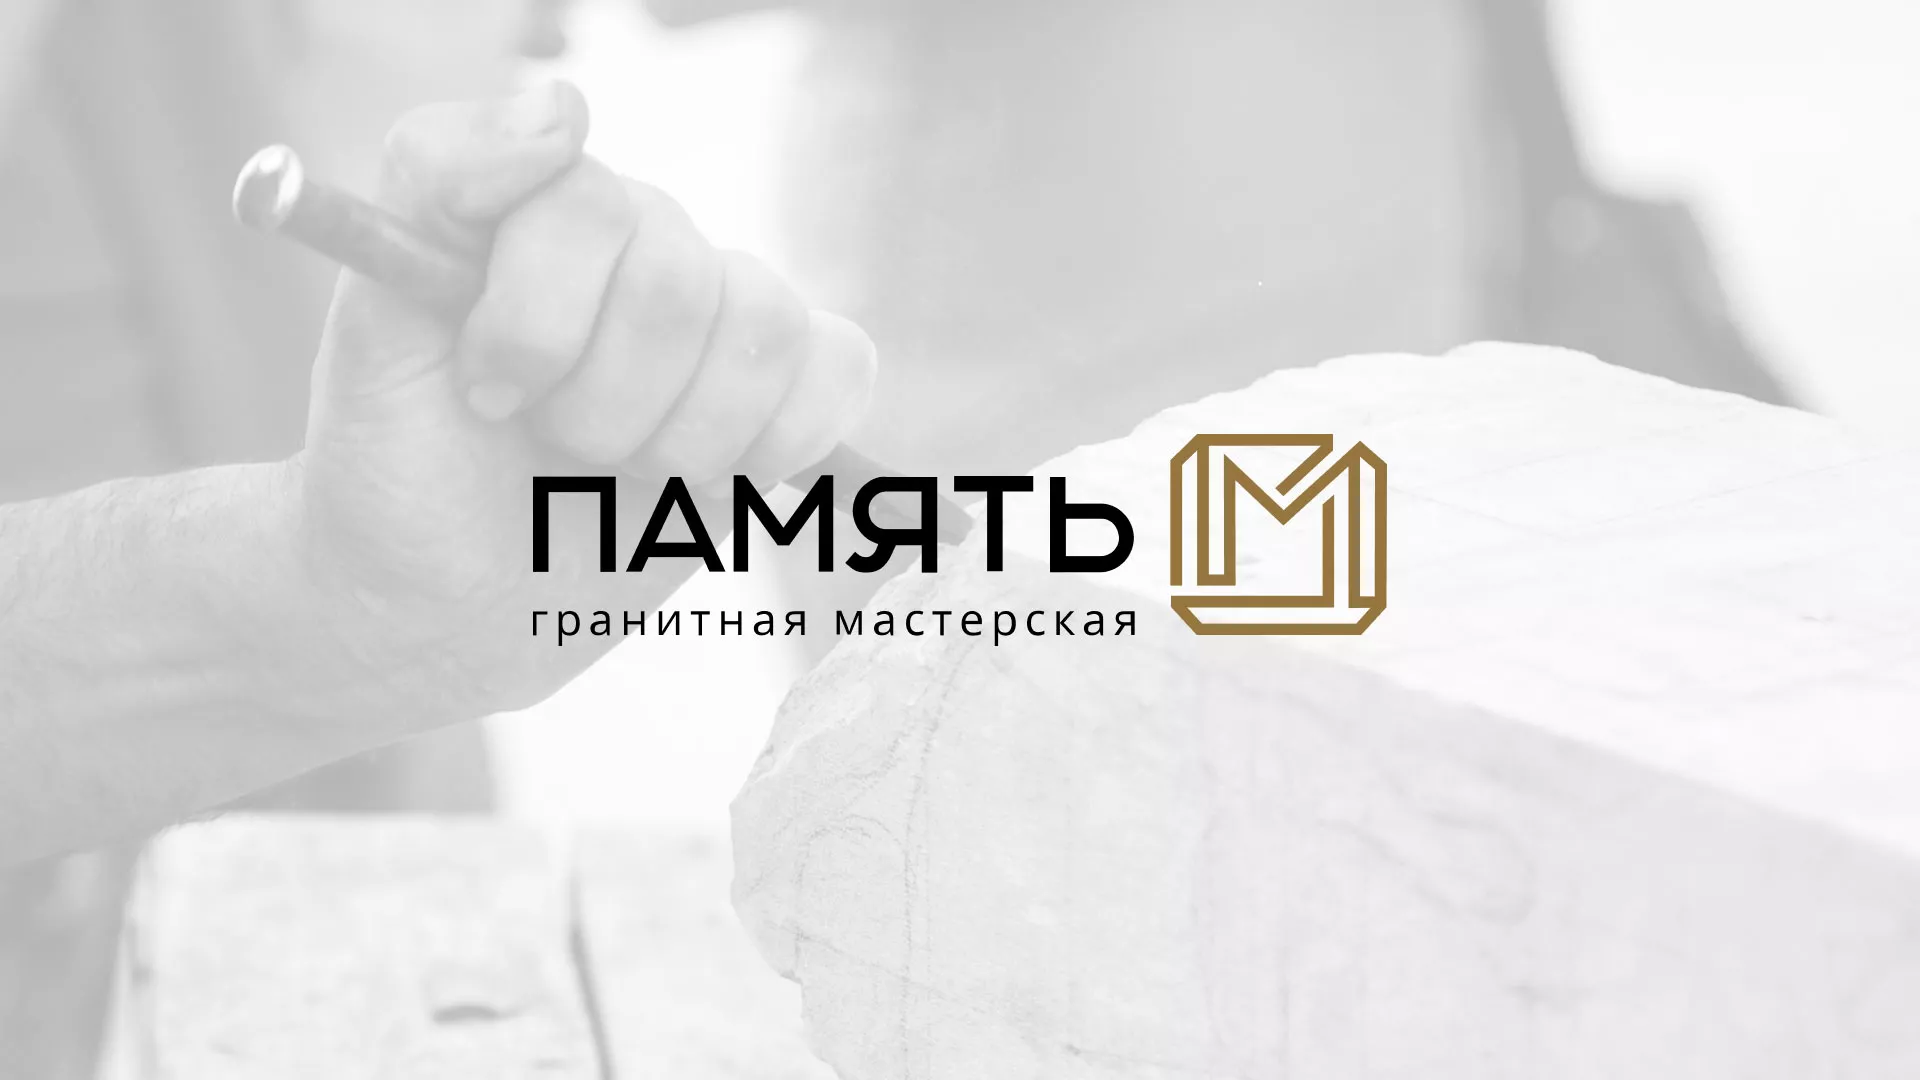 Разработка логотипа и сайта компании «Память-М» в Тайге